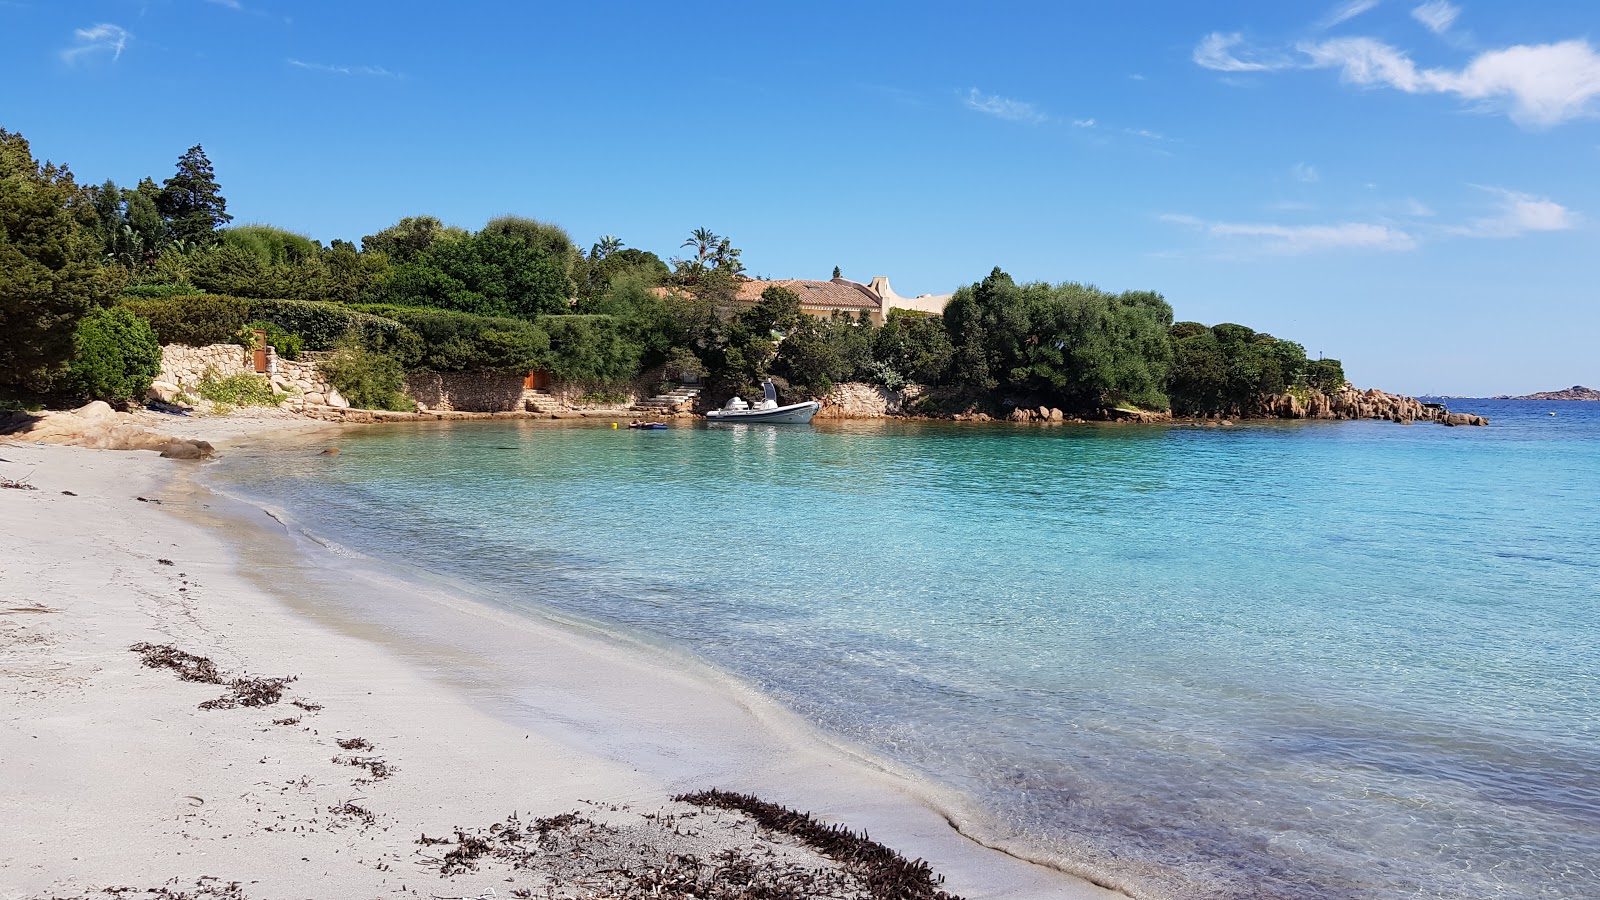 Photo of Spiaggia Piccolo Romazzino with bright sand surface